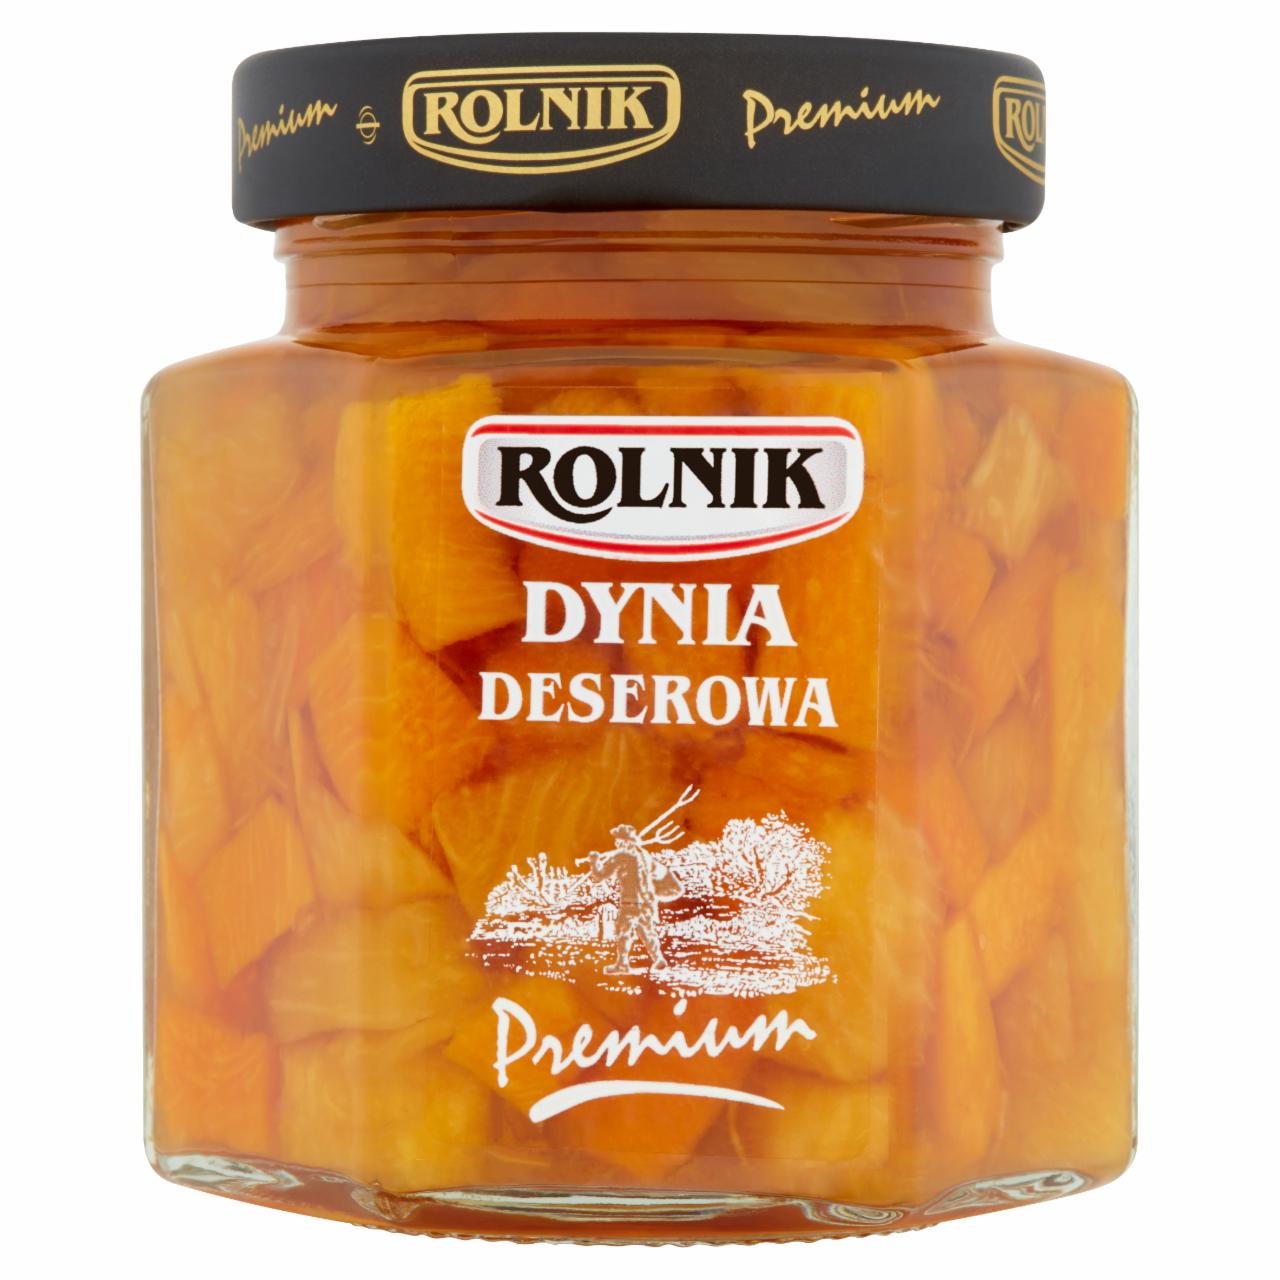 Zdjęcia - Rolnik Premium Dynia deserowa 290 g